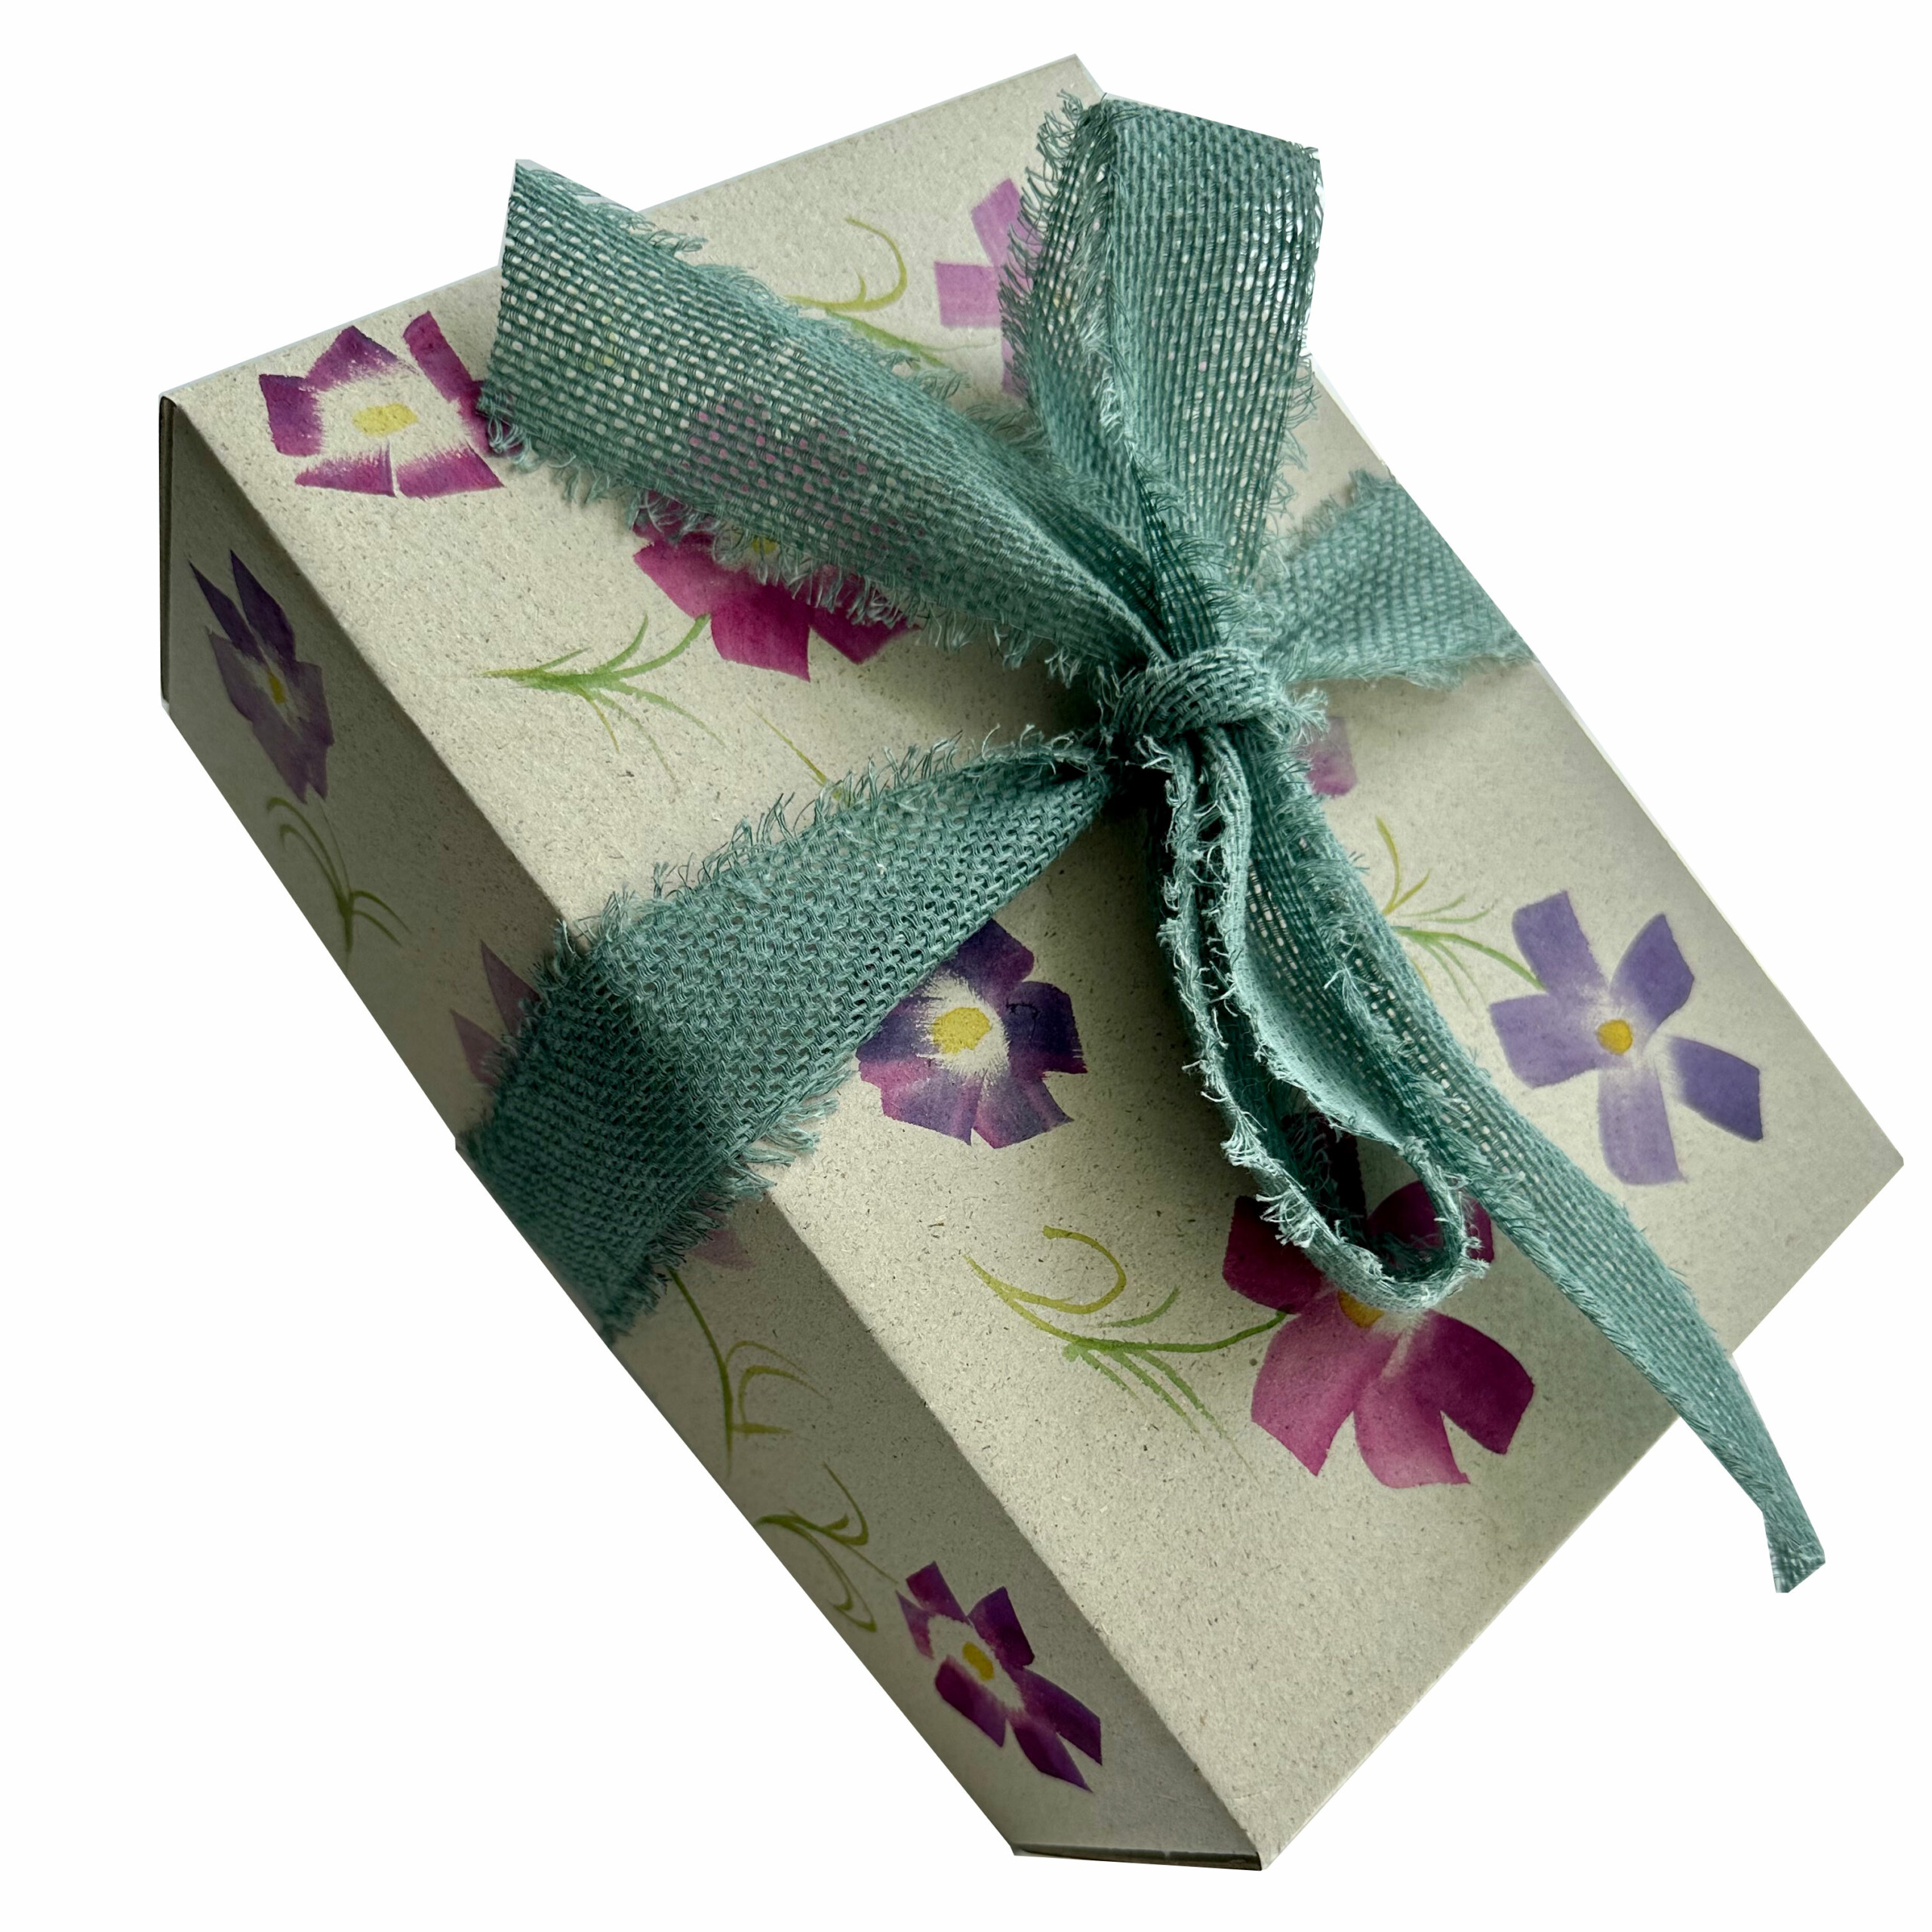 Geschenkkarton mit Blumenmuster. Handbemalt und mit einer grünen Schleife.